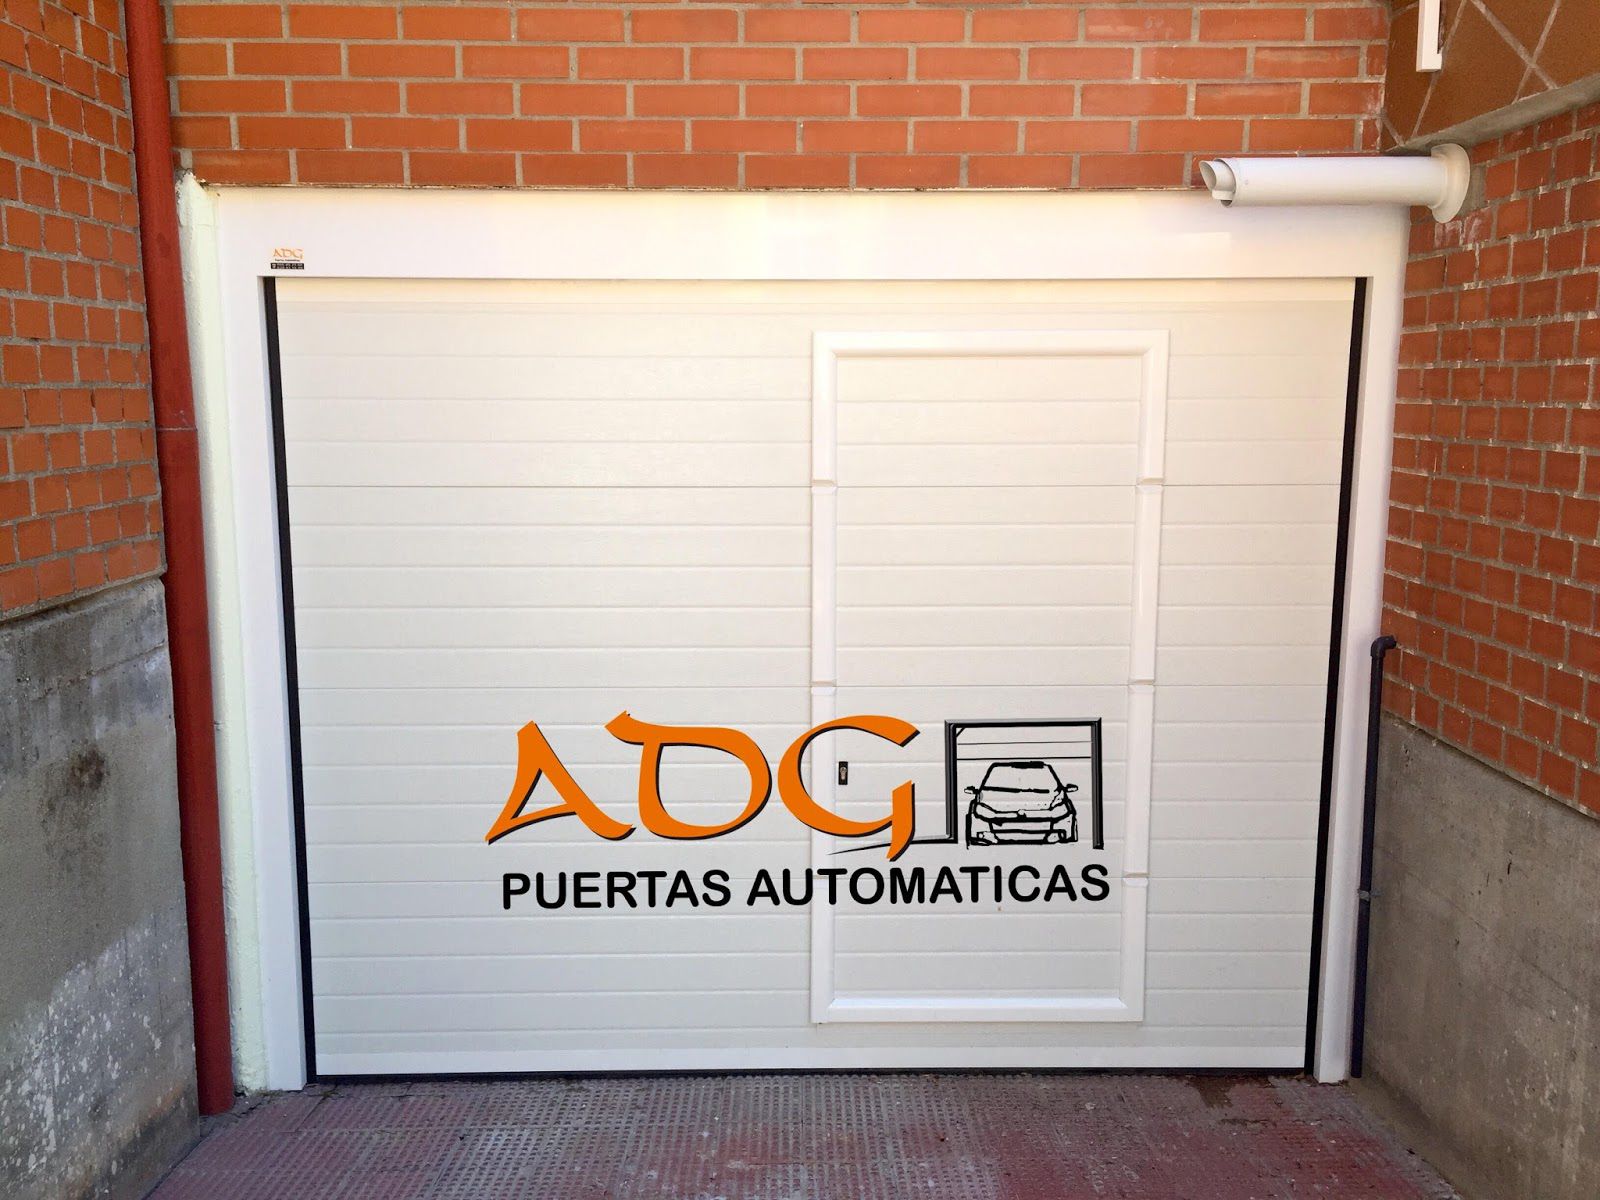 Foto 2 de Automatización en Collado Villalba | ADG Puertas Automáticas